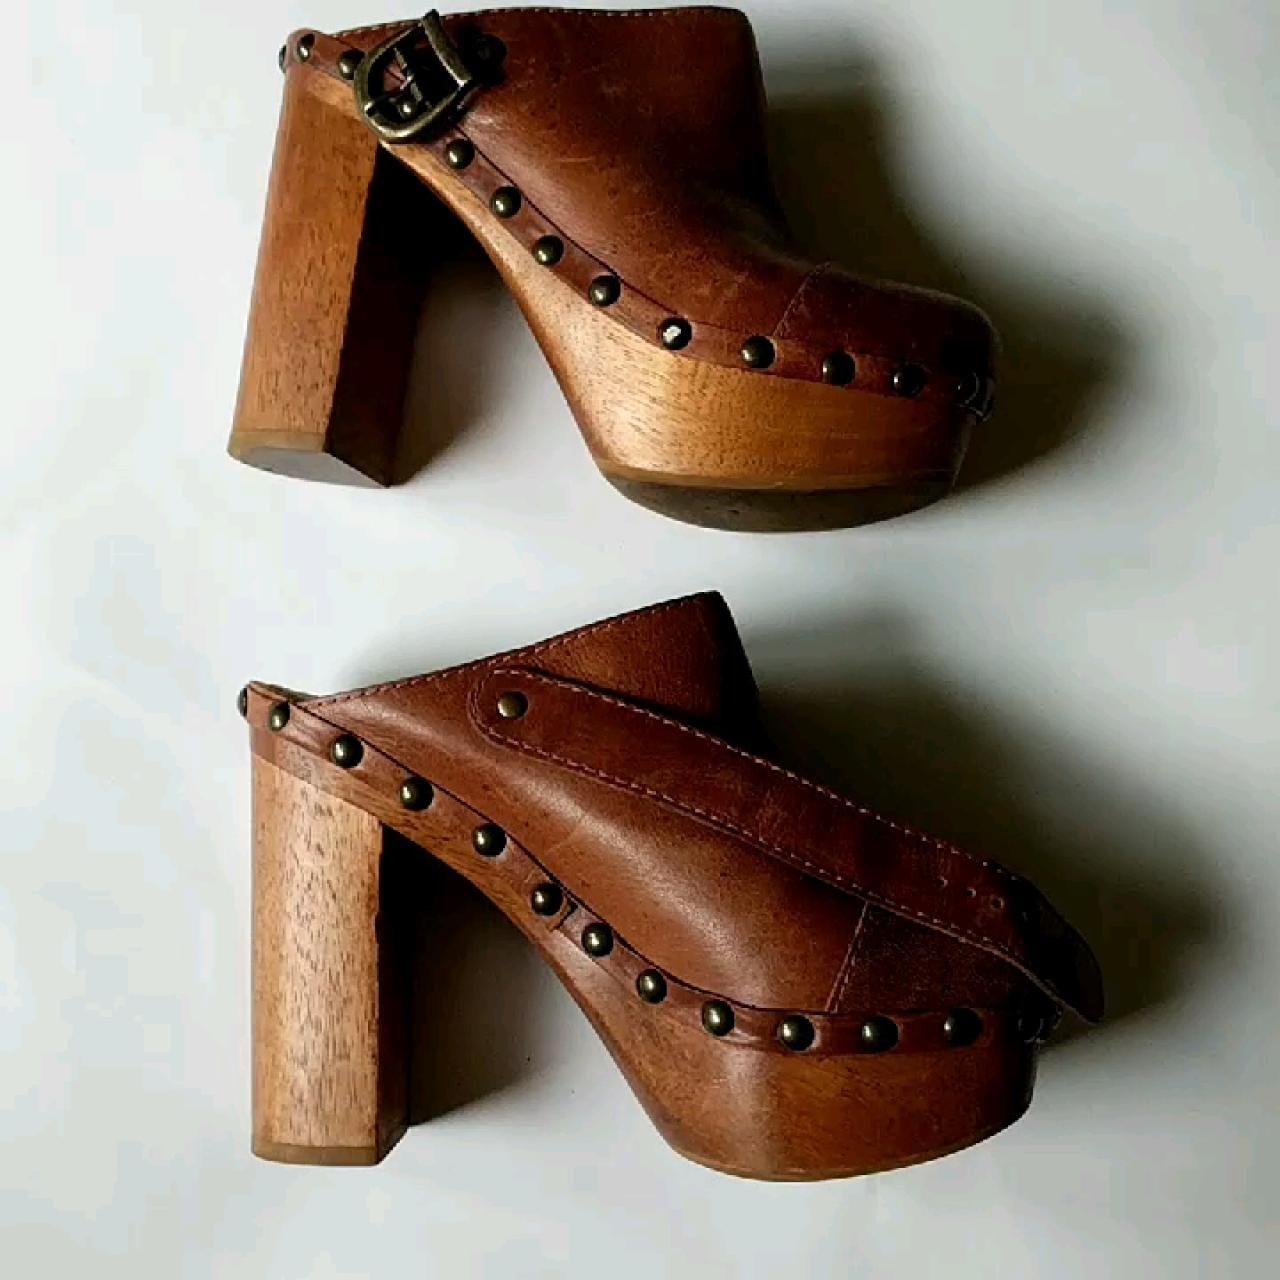 wooden clogs high heels